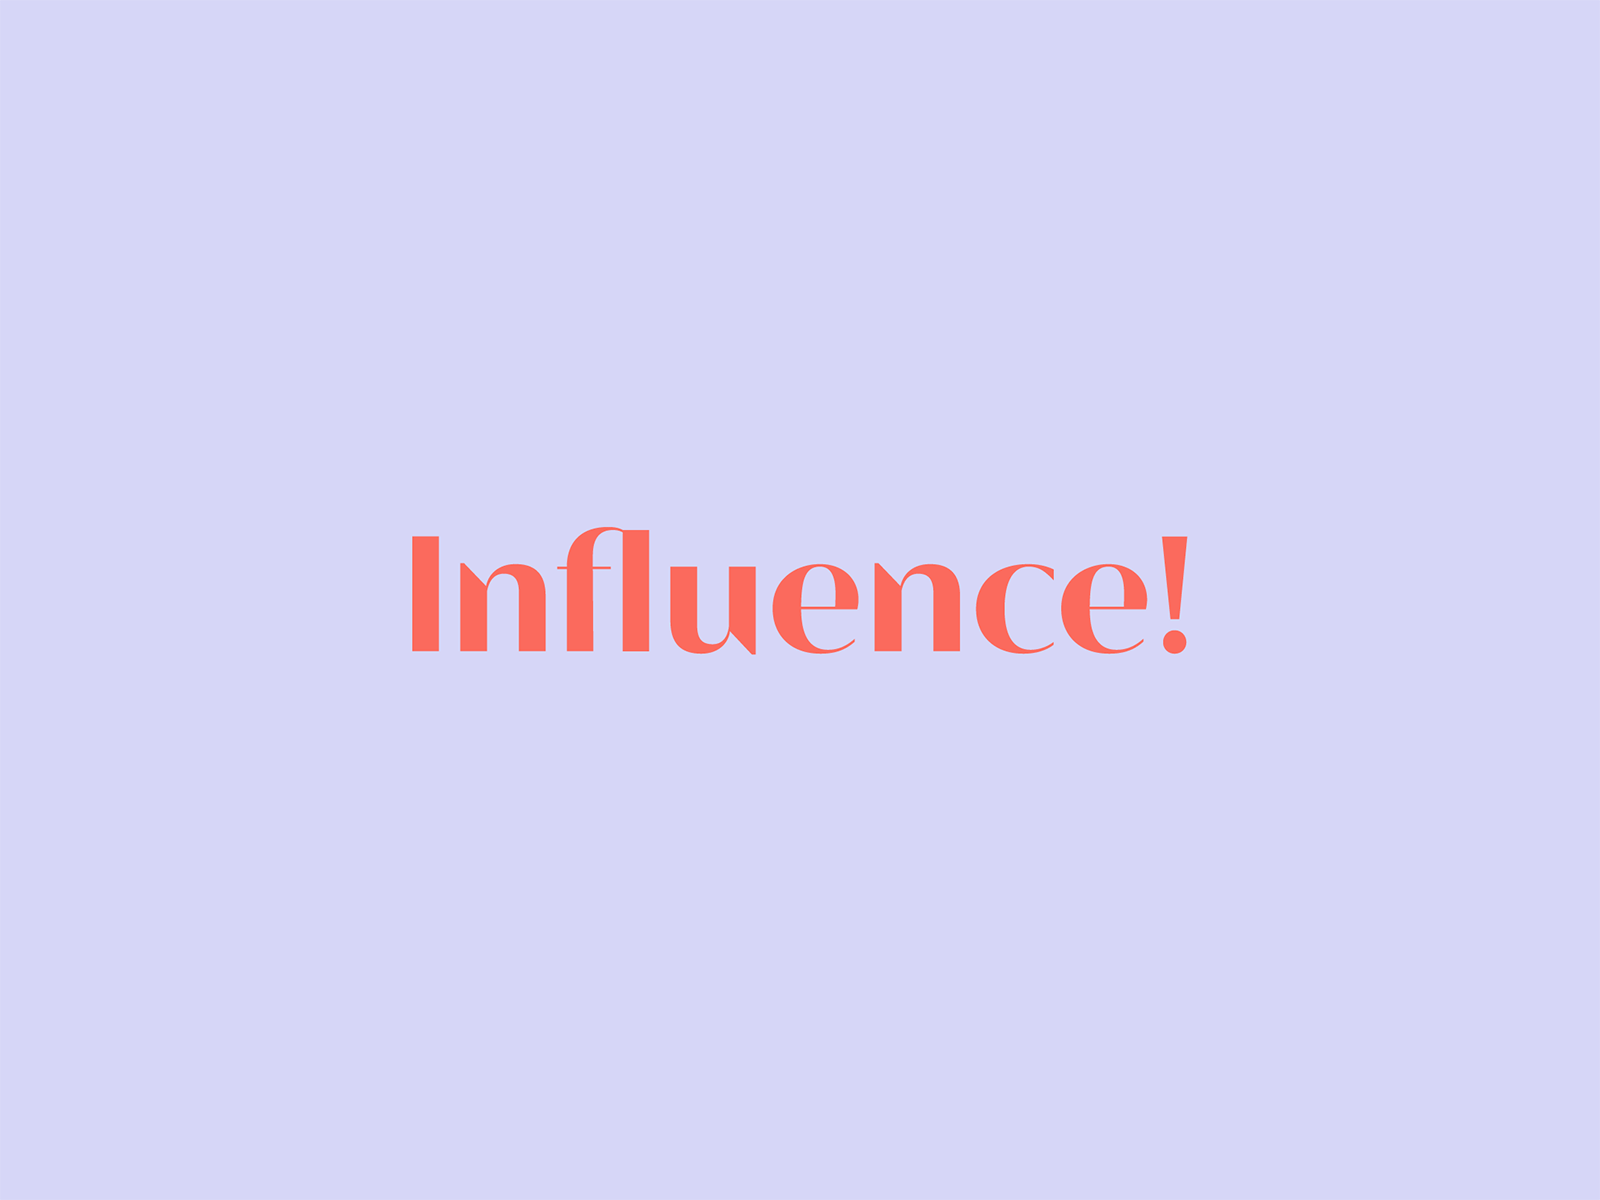 Influence! Podcast brand colors brand design branding branding design design german design illustration illustrator logo logo design logodesign pastel colors podcast branding podcast design podcast logo